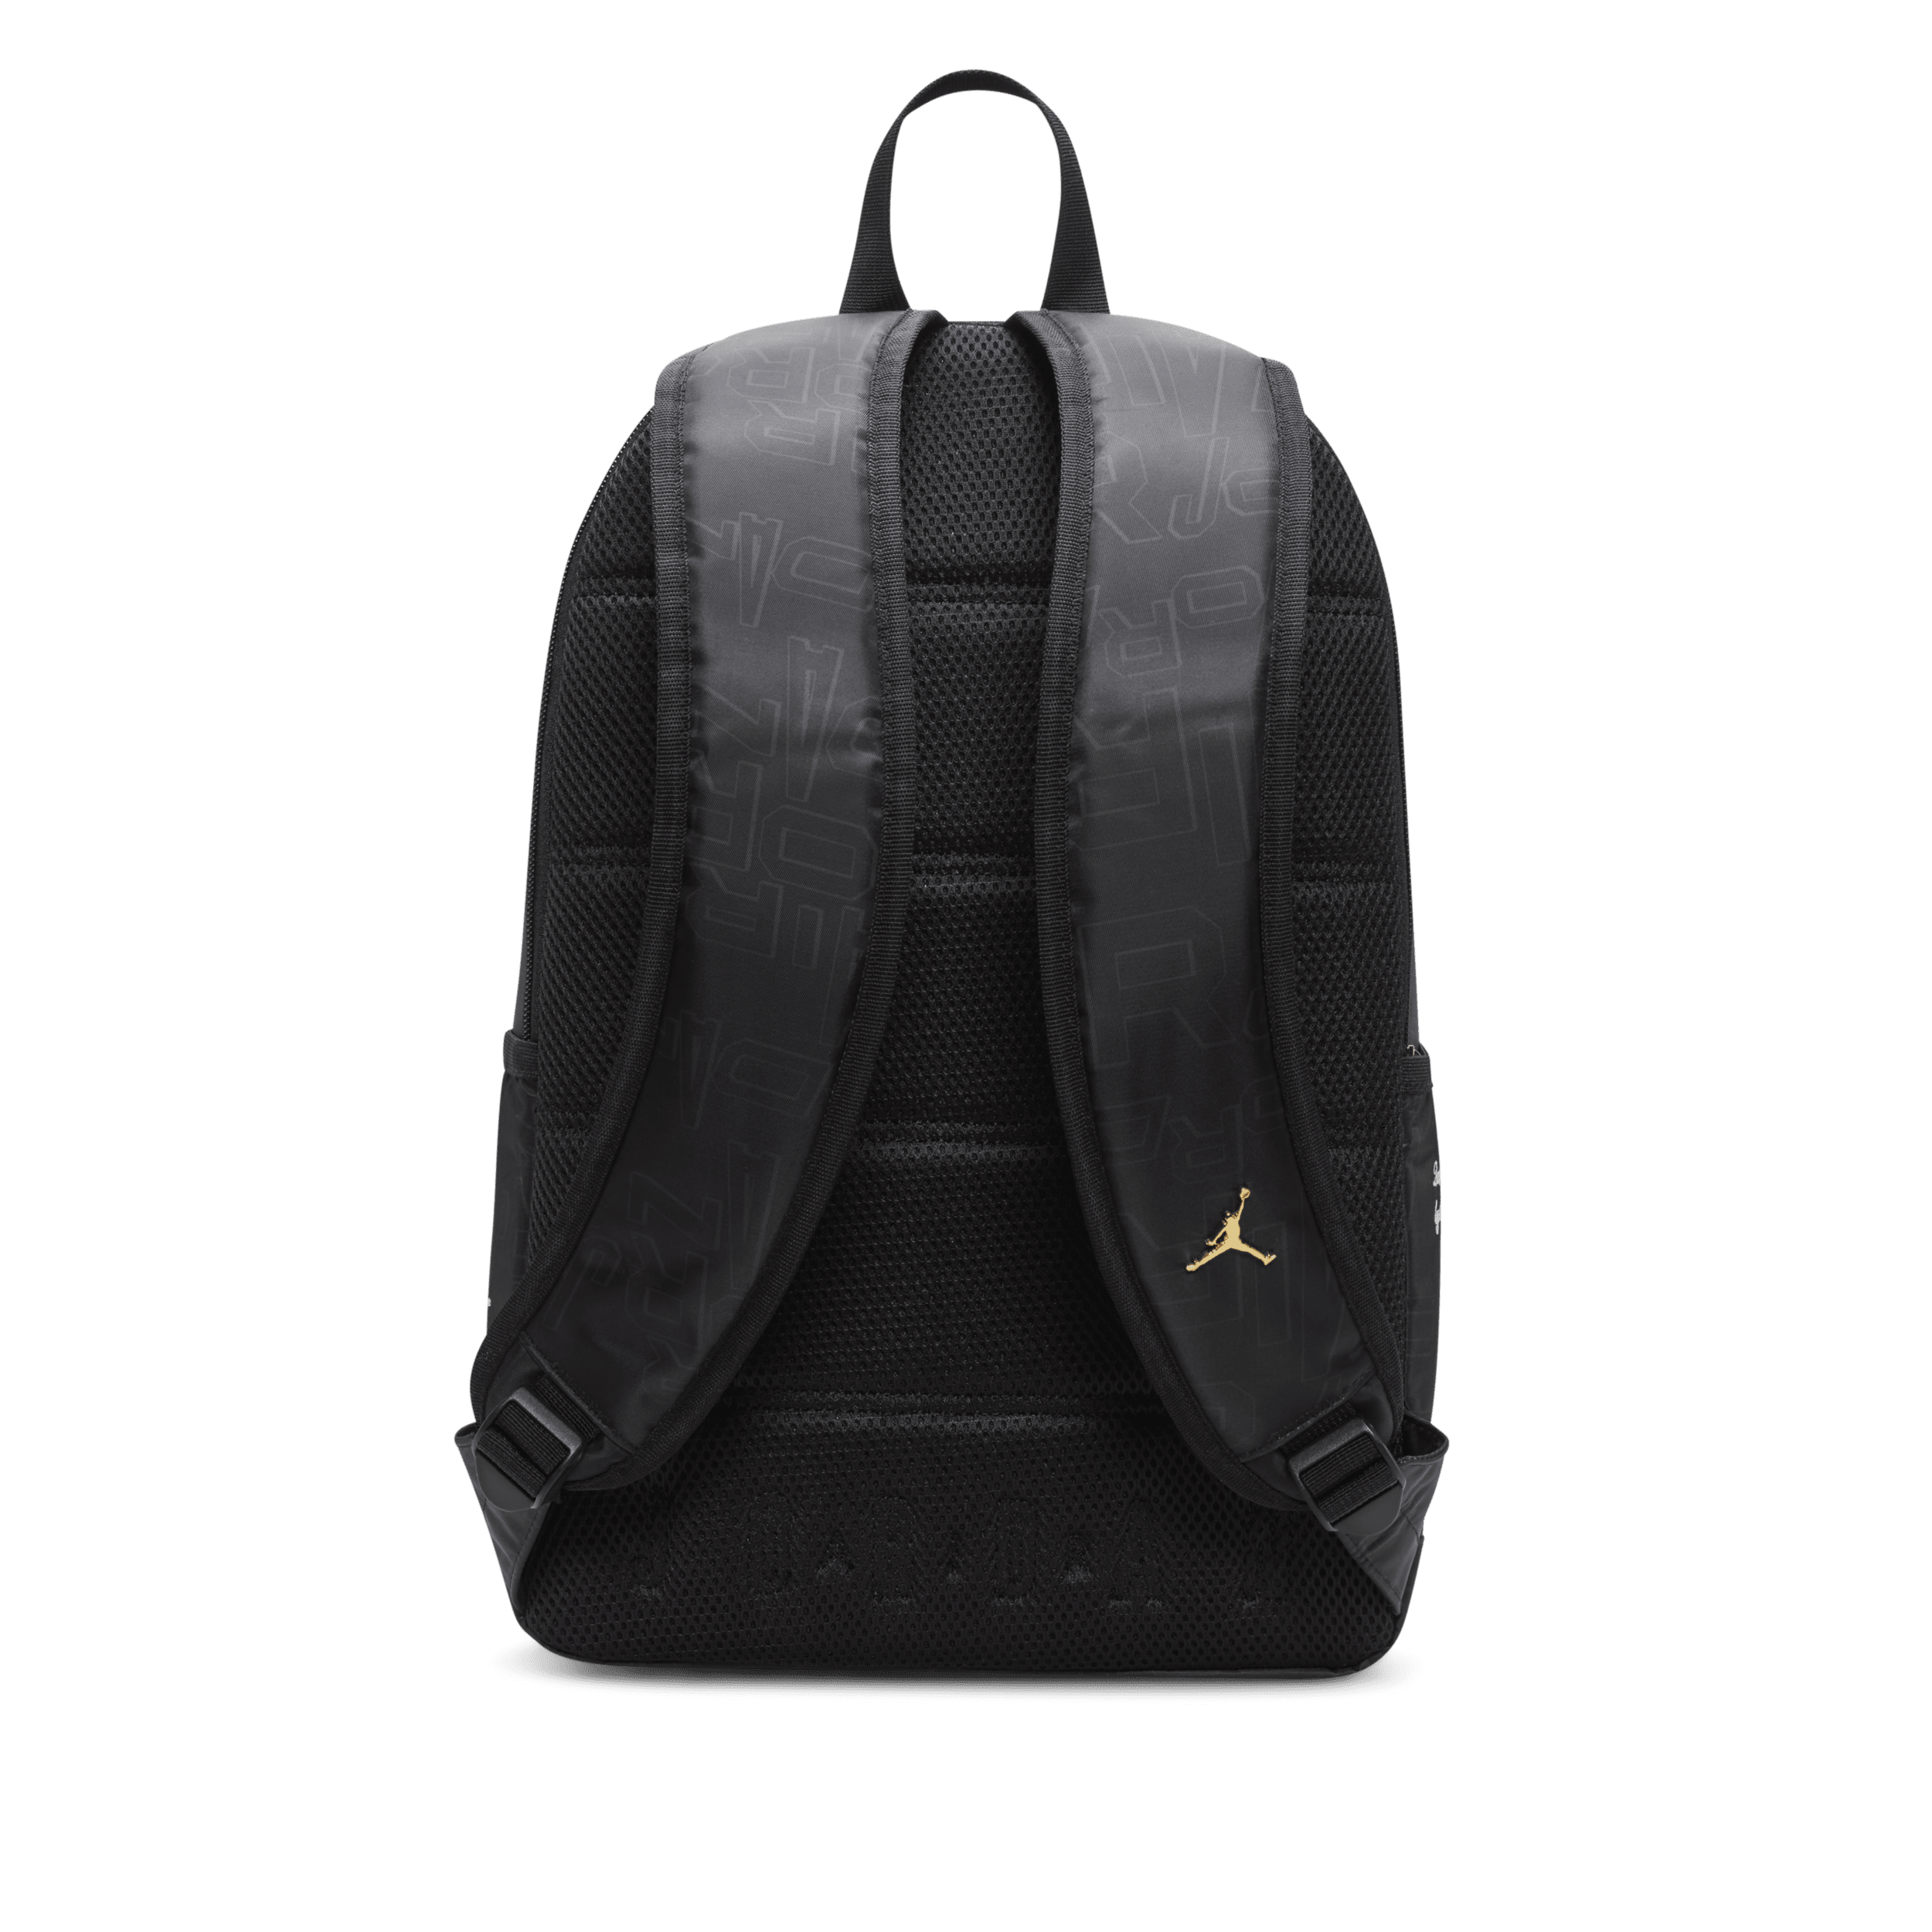 Jordan Black and Gold Backpack Rugzak (19 L) Zwart